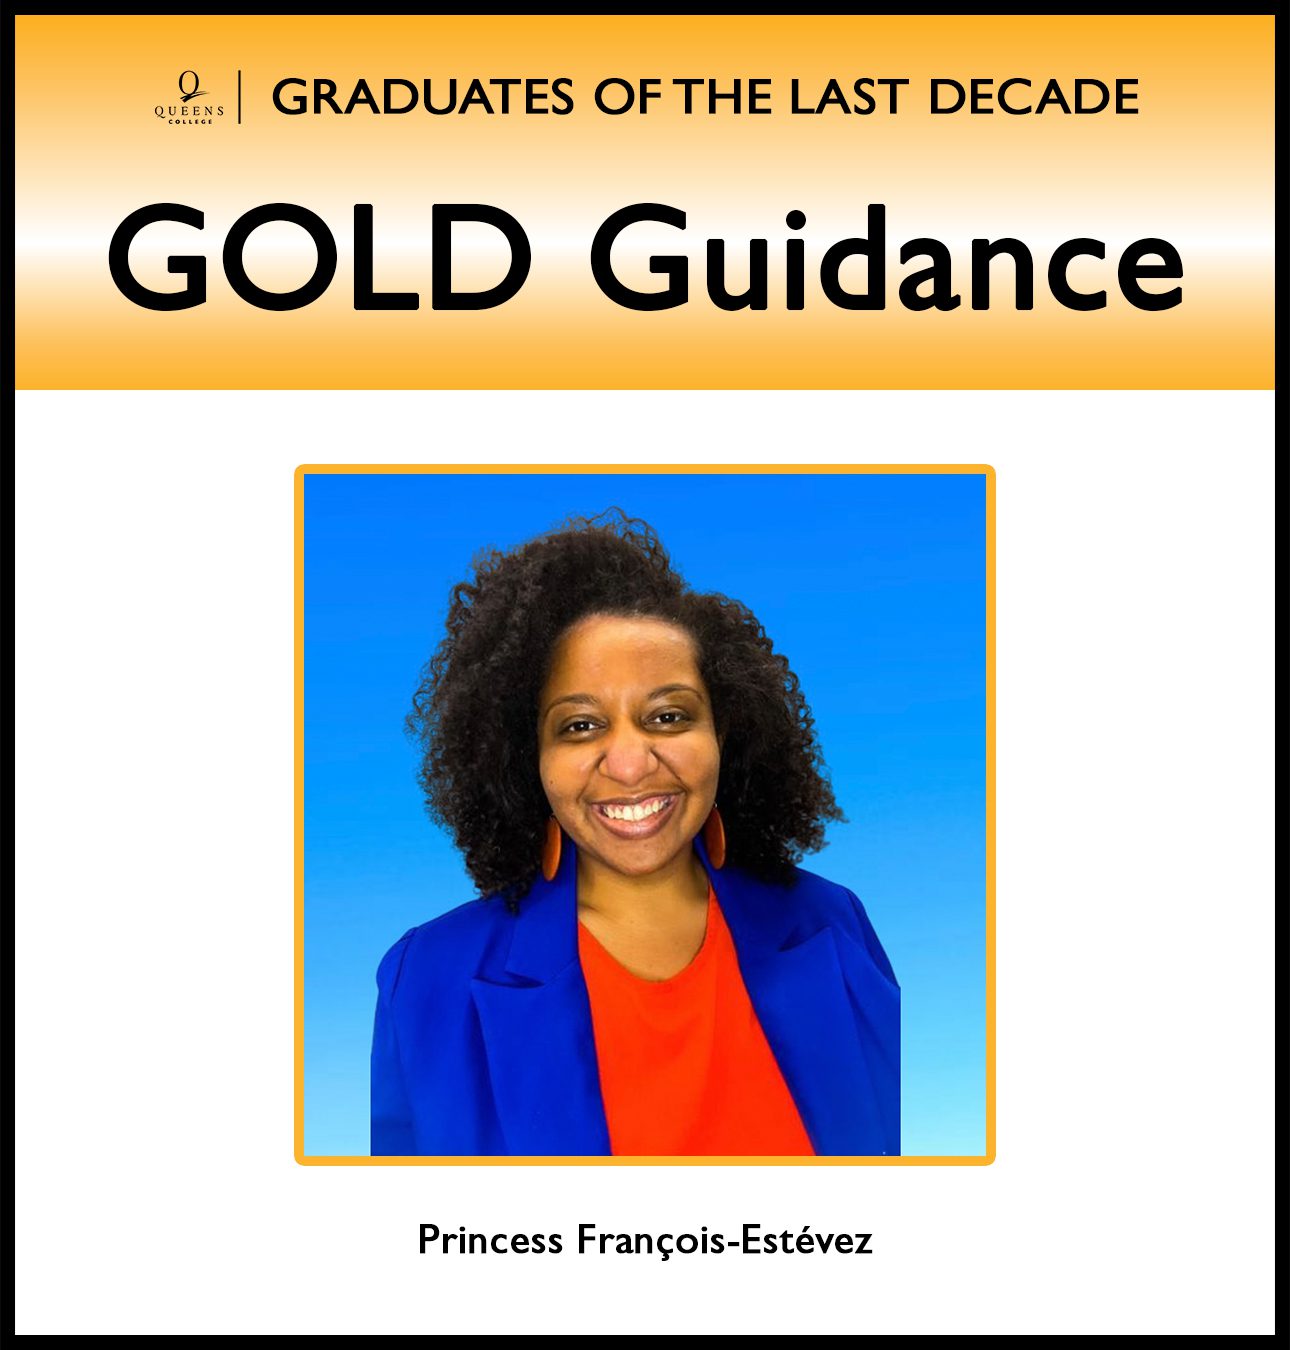 GOLD Guidance: Career Conversations with 5-6-24_GOLD Guidance - Princess François-Estévez